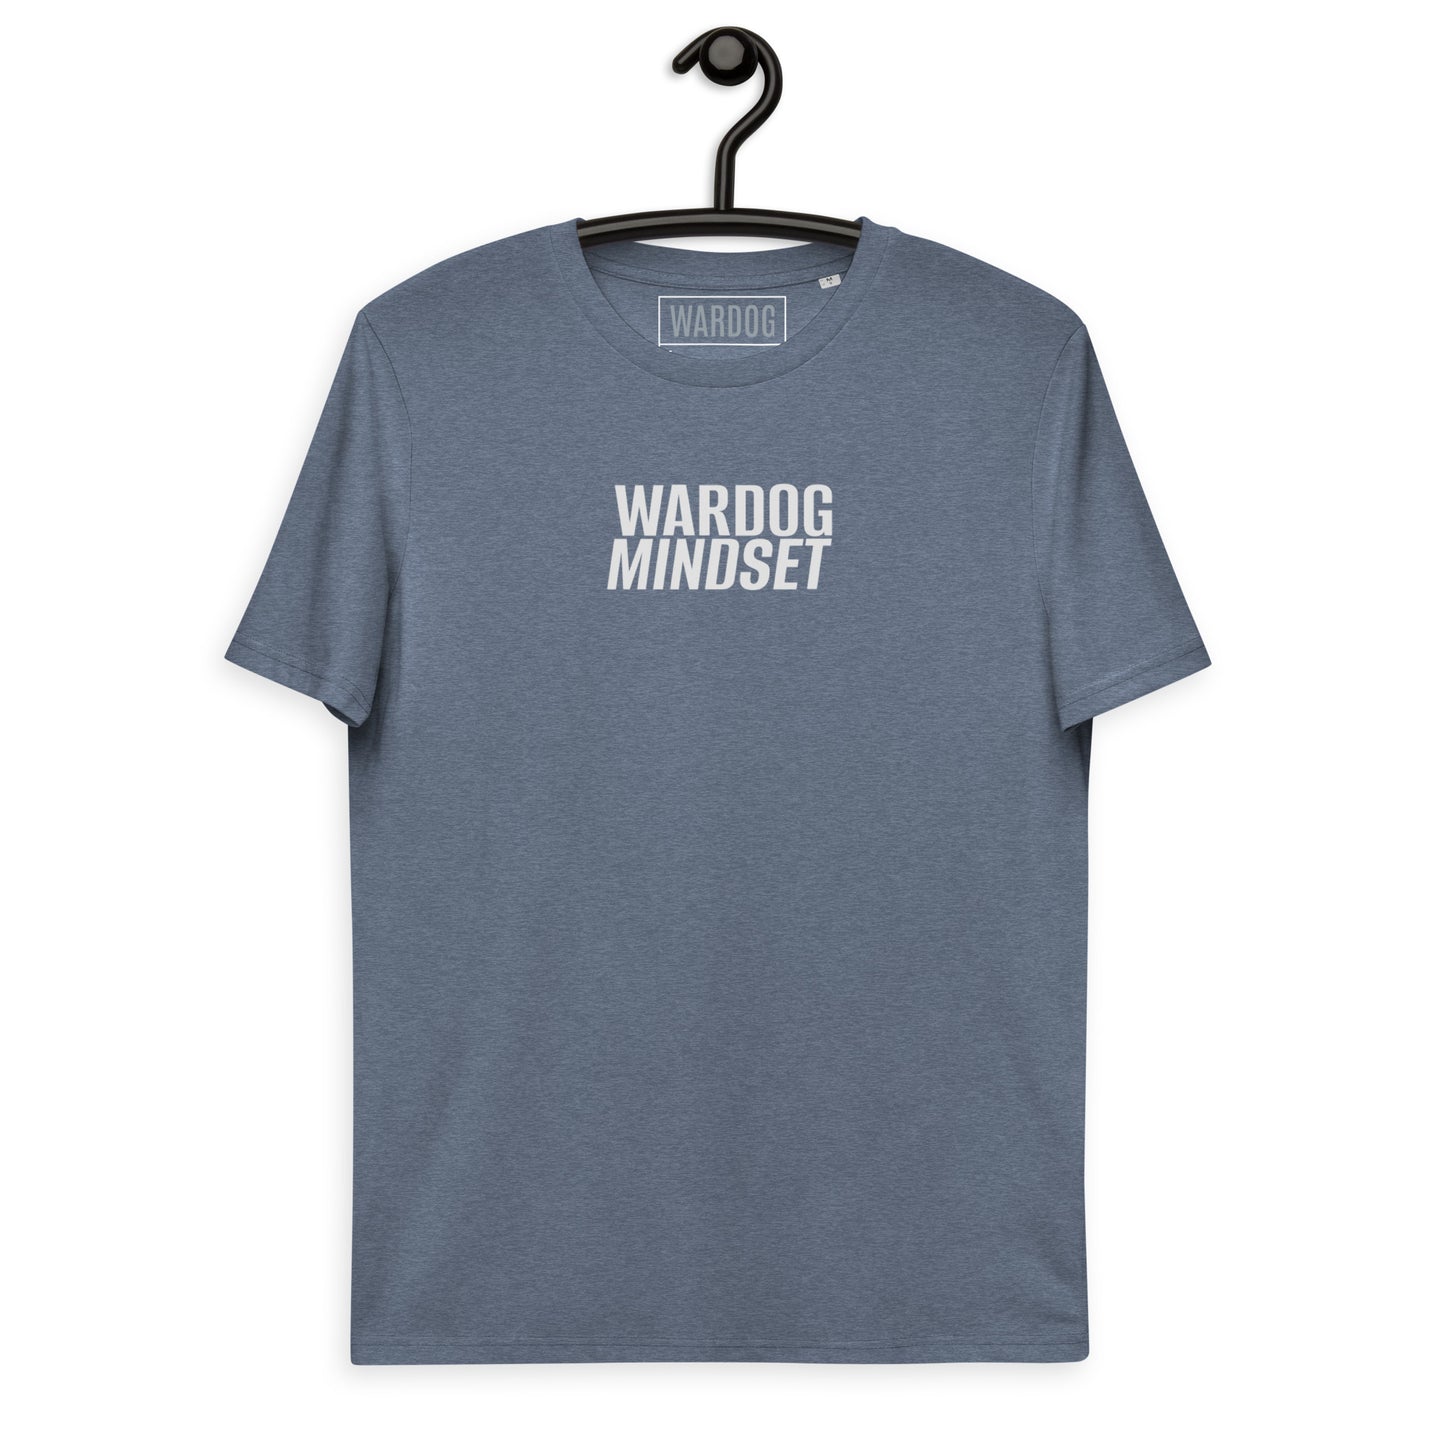 WARDOG MINDSET Unisex organic cotton t-shirt